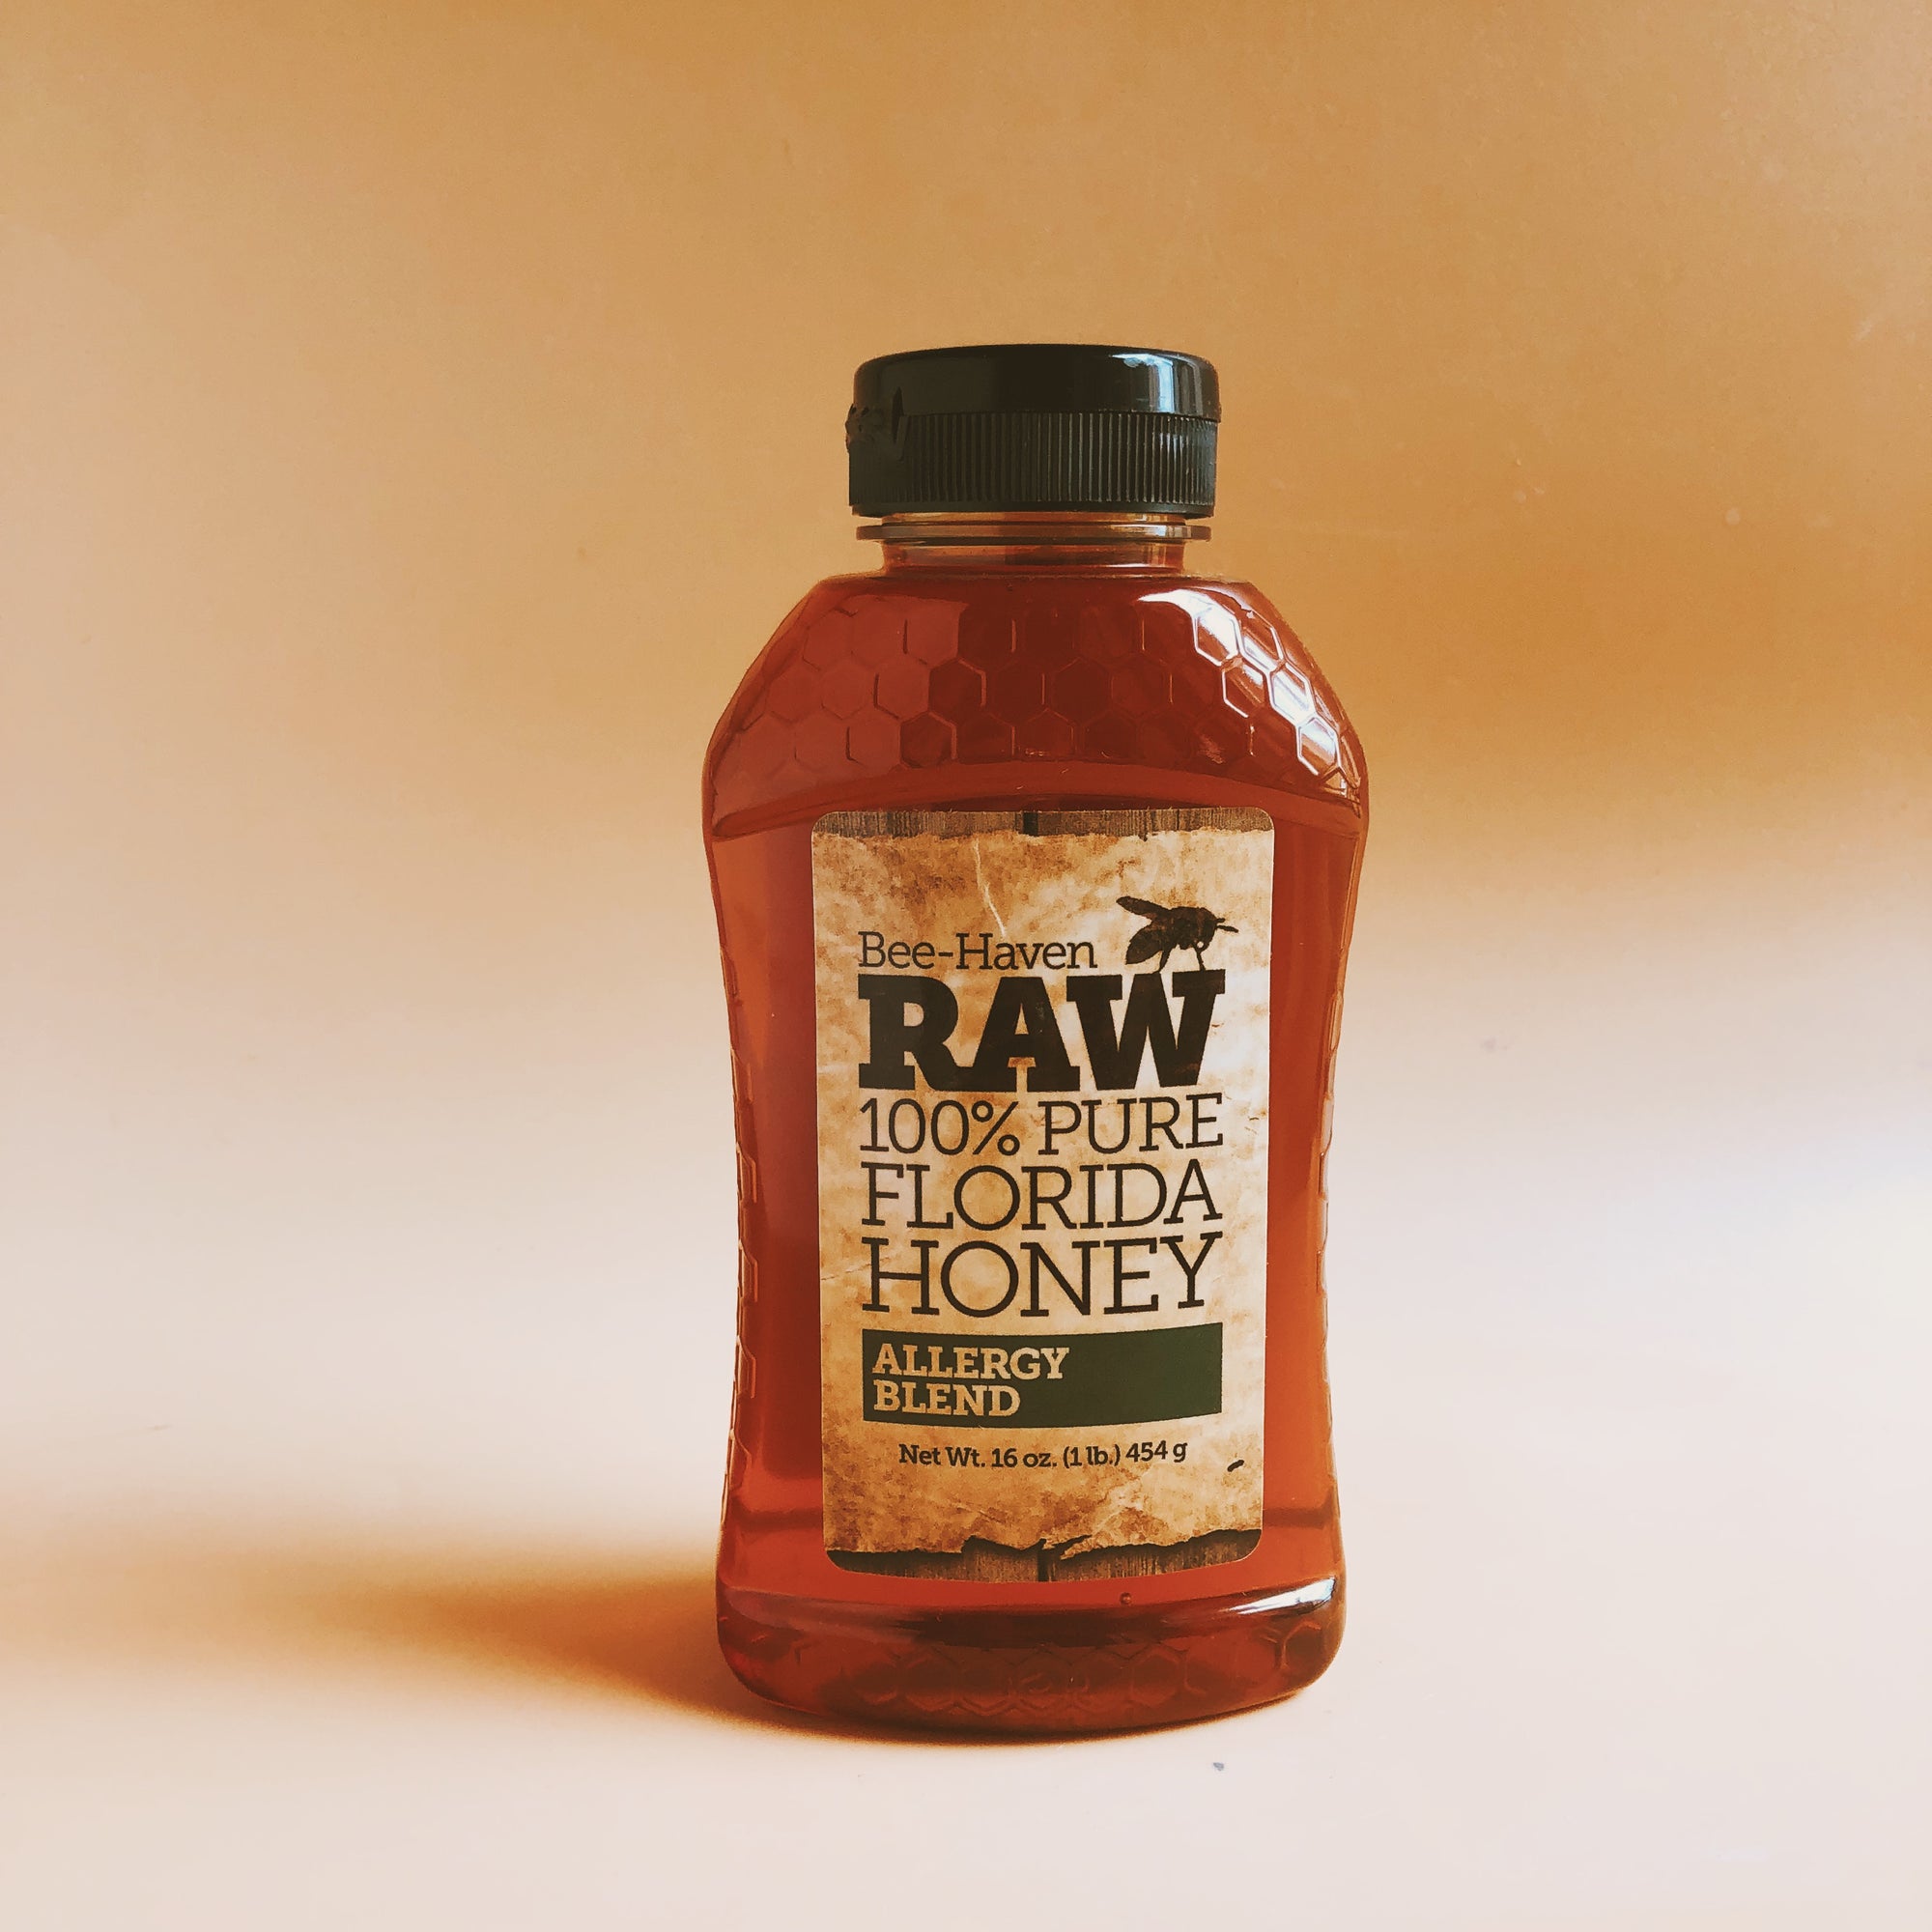 Allergy Blend honey